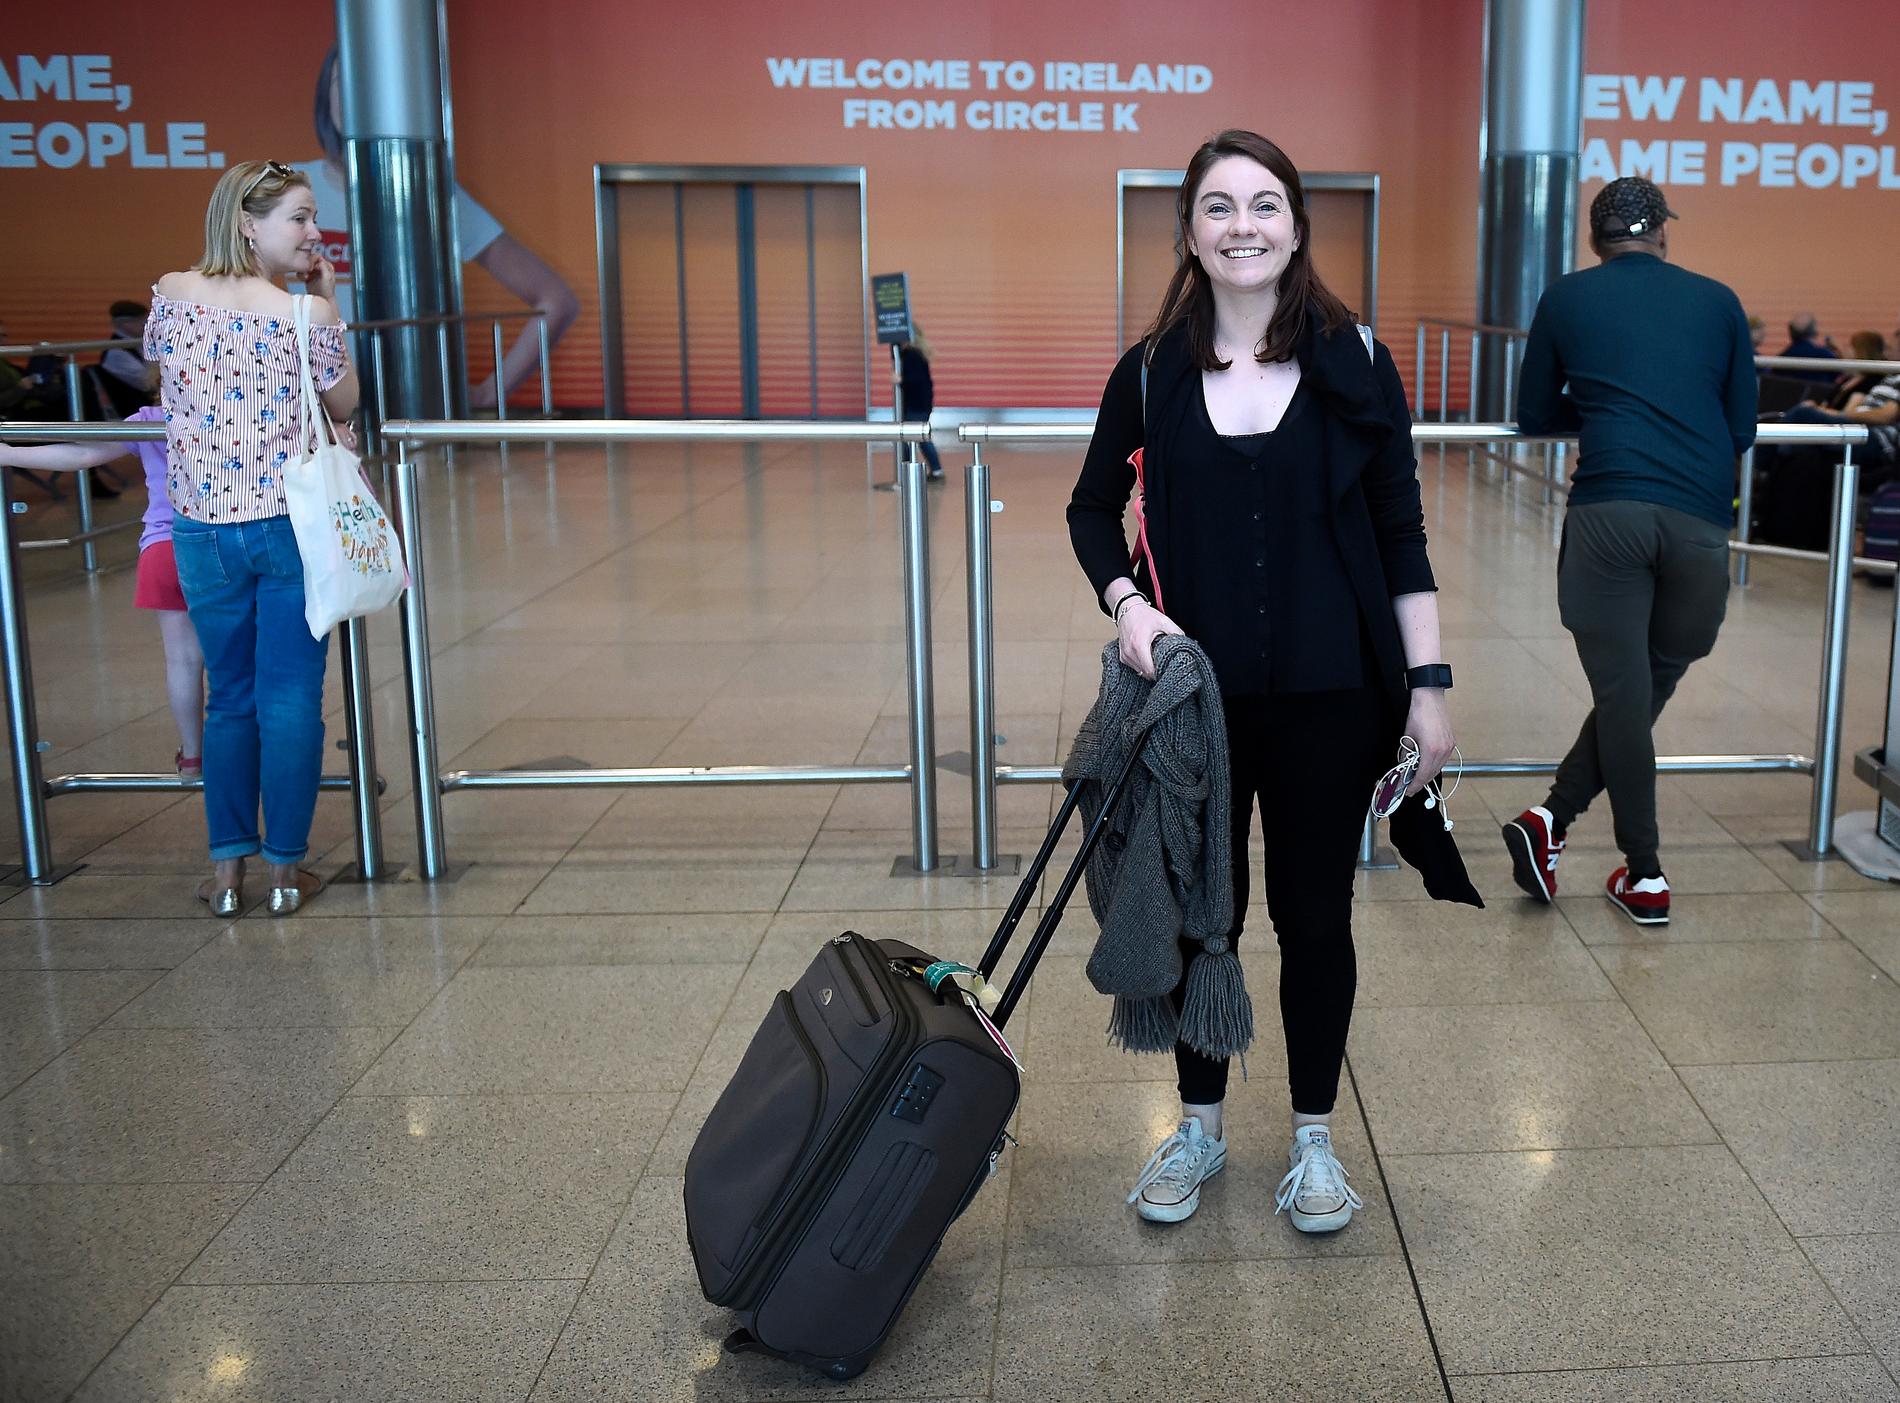 Claire Scanlan anländer till Dublins flygplats från Budapest där hon studerar. Hon reste hem för att rösta i folkomröstningen. 